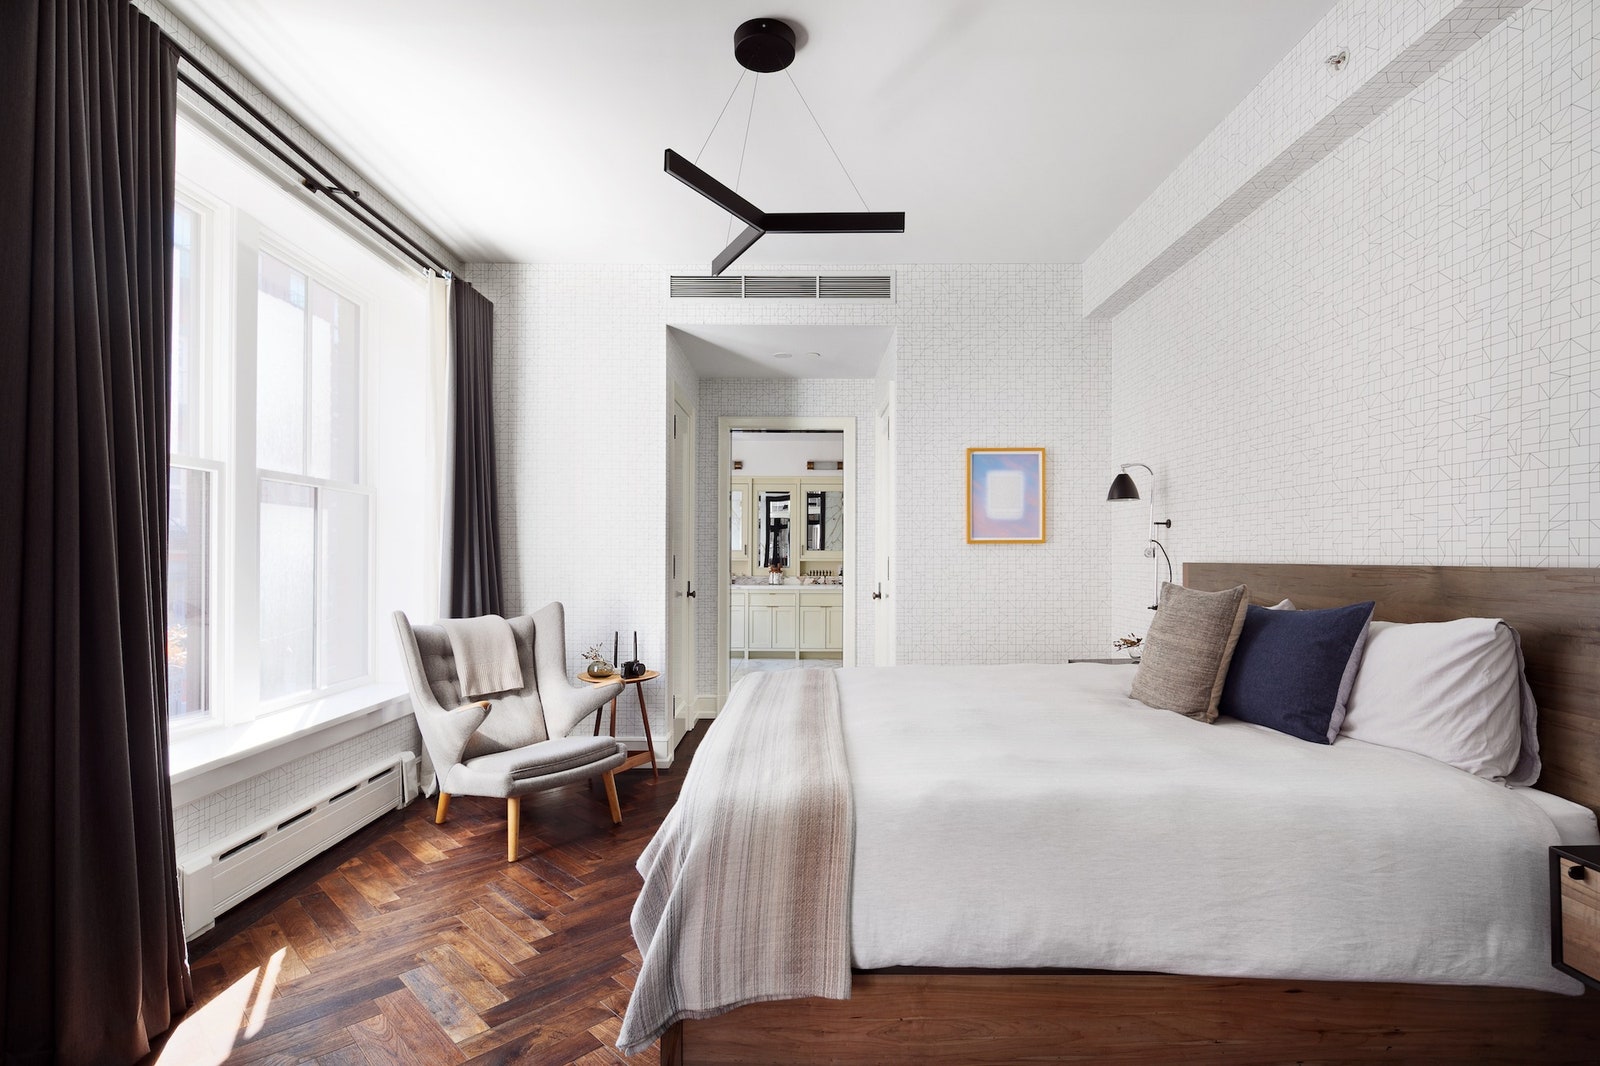 Квартира Карли Клосс и Джошуа Кушнера в НьюЙорке фото апартаментов